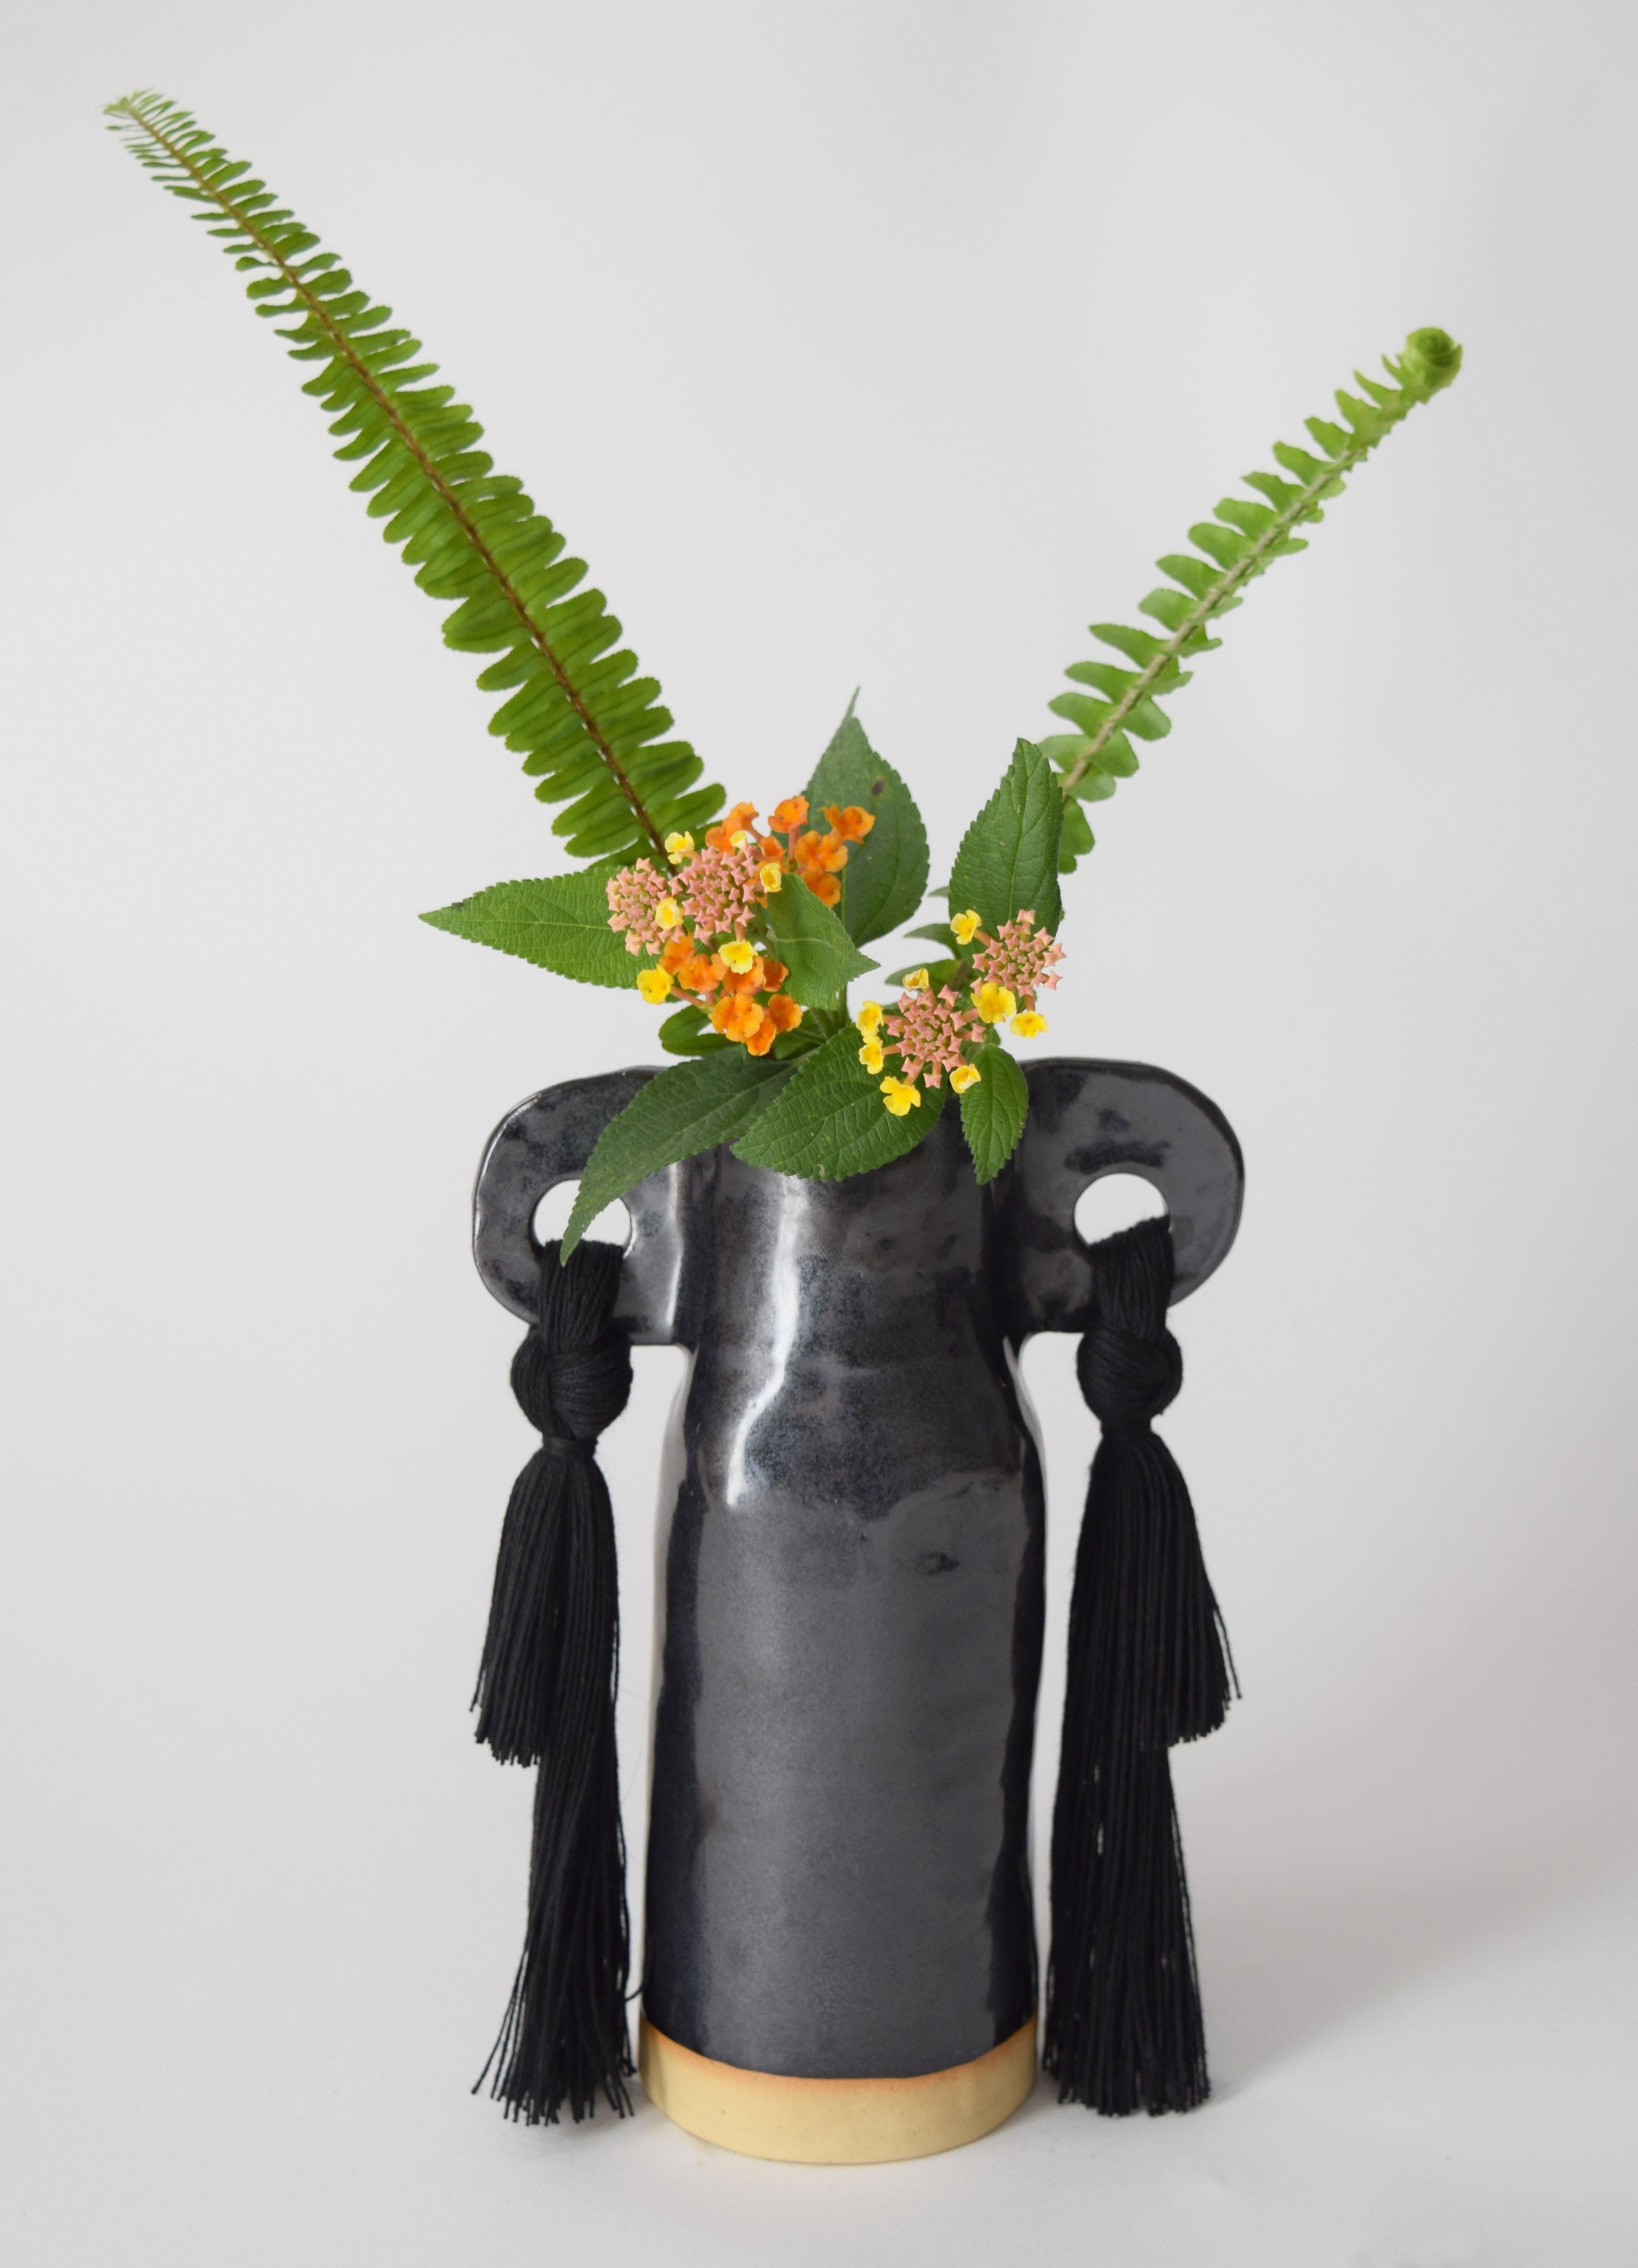 Vase #606 de Karen Gayle Tinney

Un petit vase parfaitement dimensionné pour être utilisé seul dans un petit espace ou pour accompagner une pièce plus grande. Chaque vase est formé à la main, ce qui rend chaque pièce unique.

Grès avec glaçure